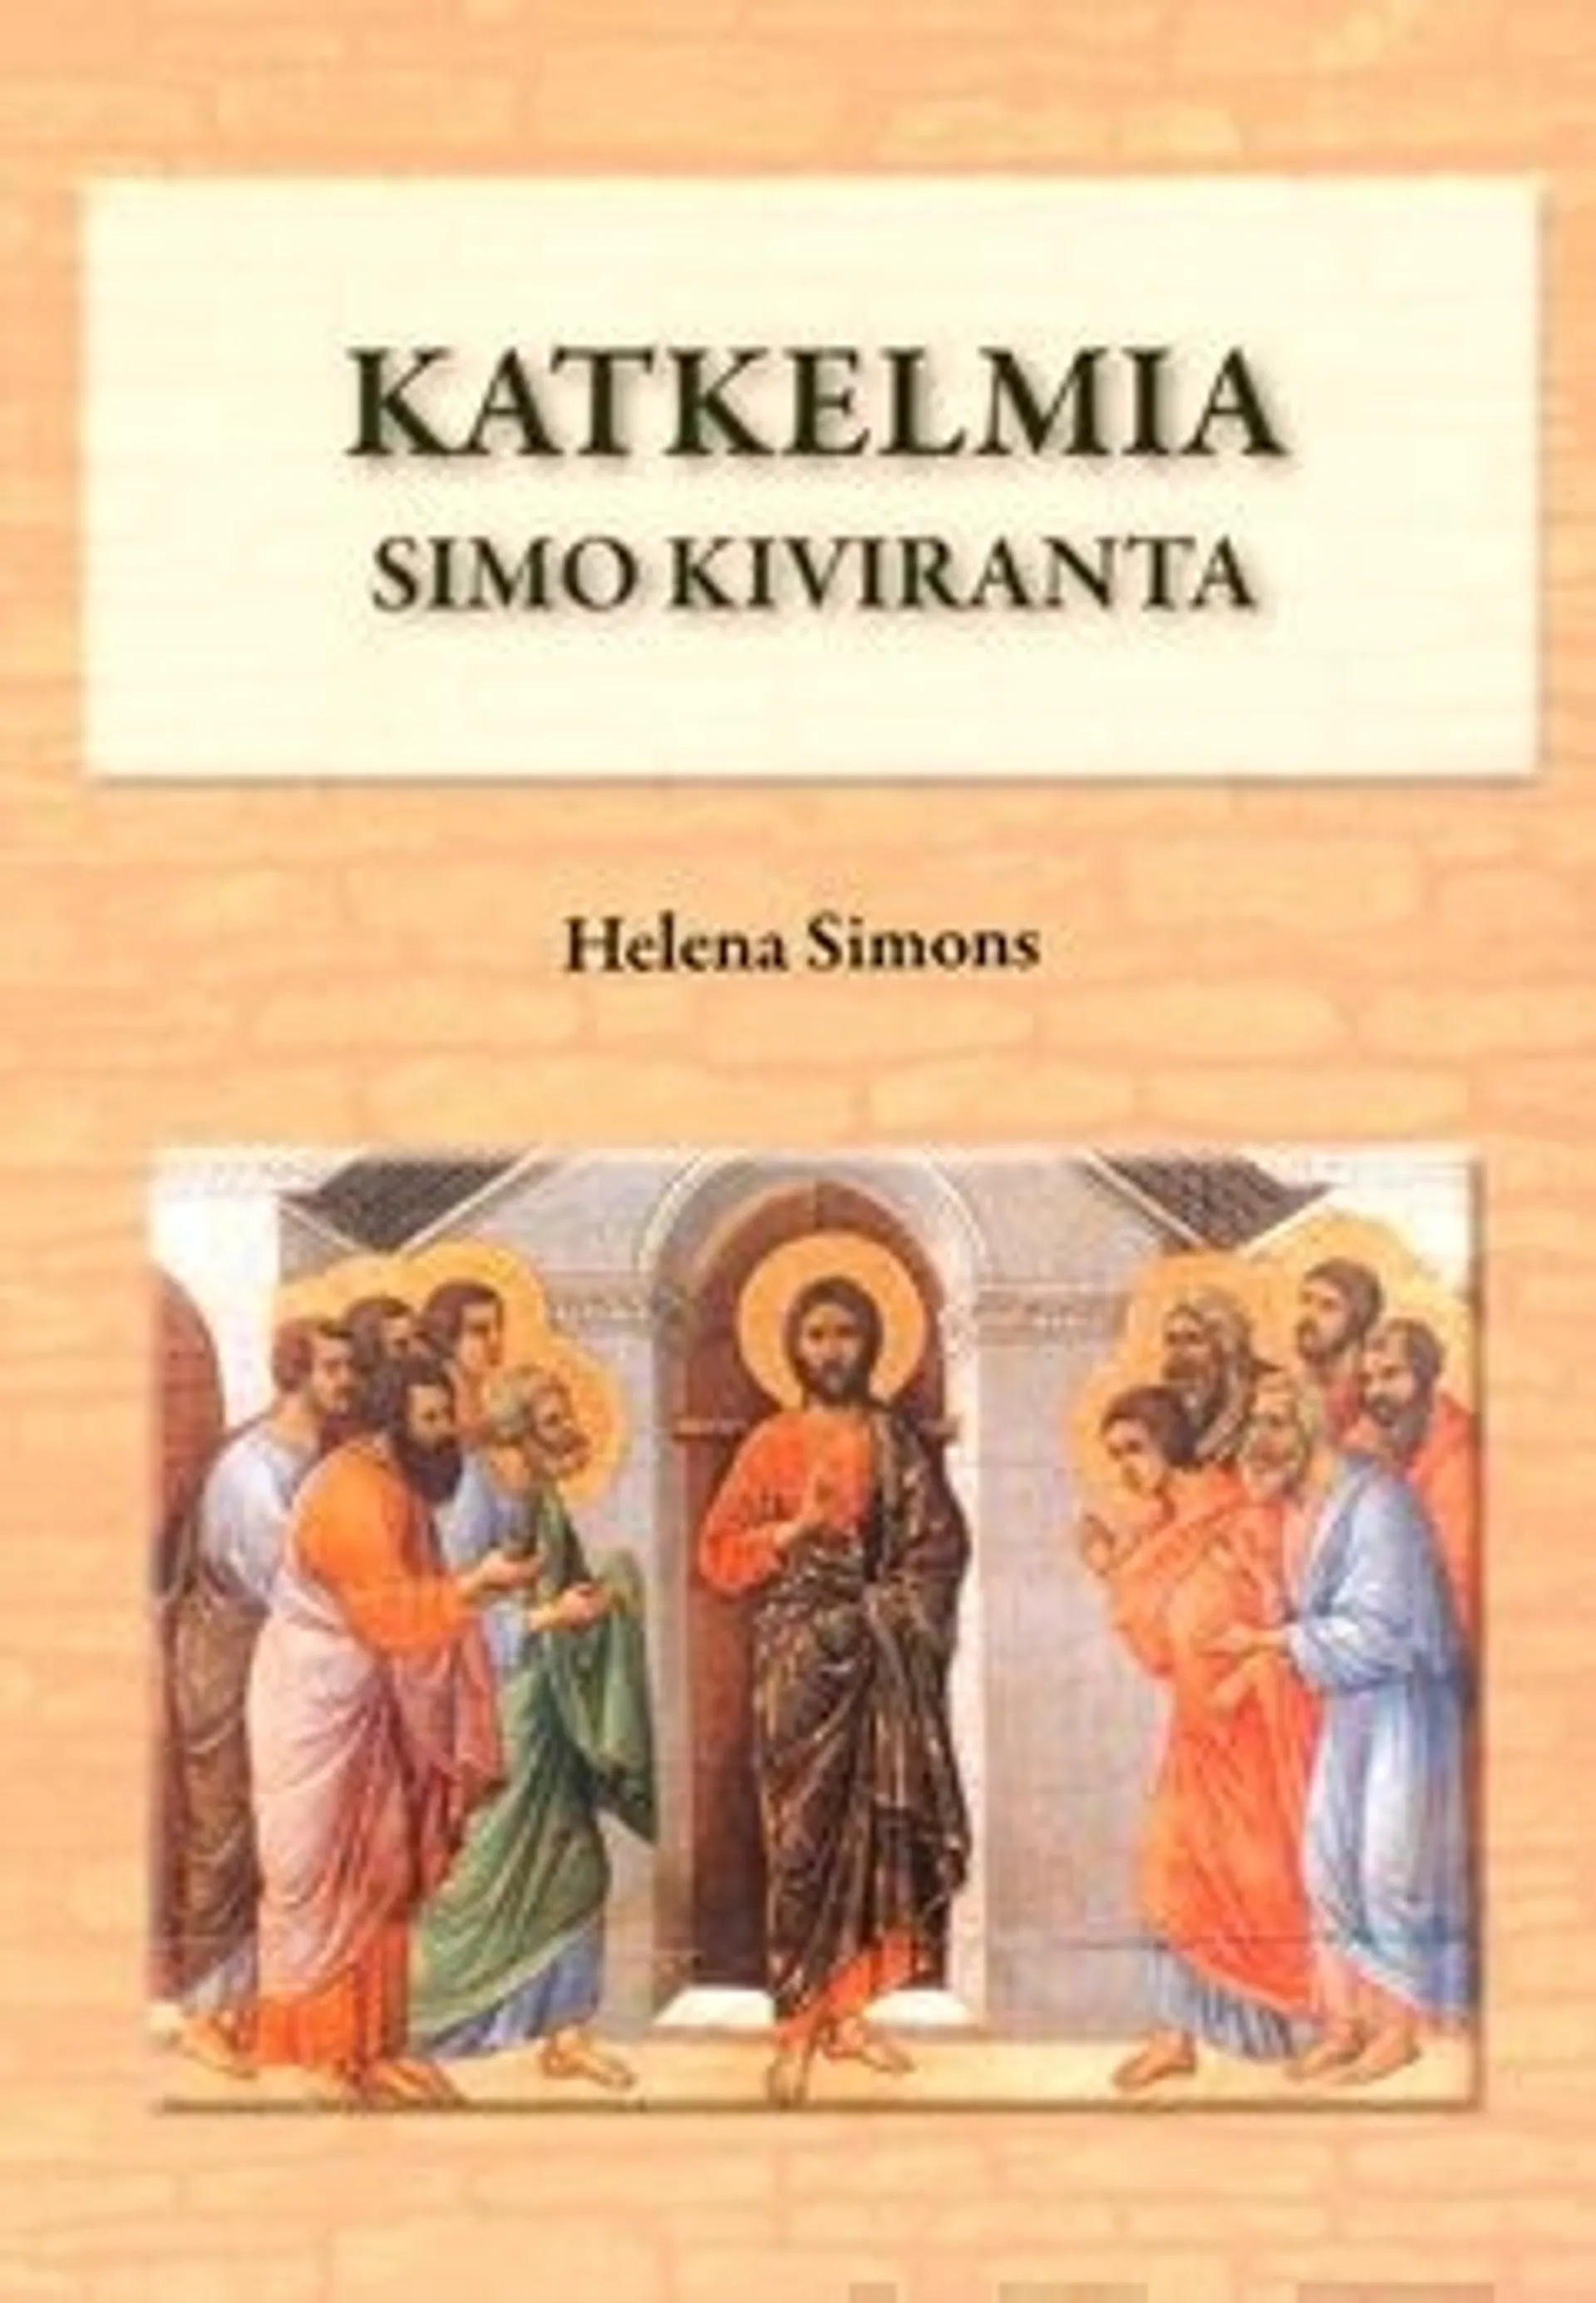 Katkelmia - Simo Kiviranta